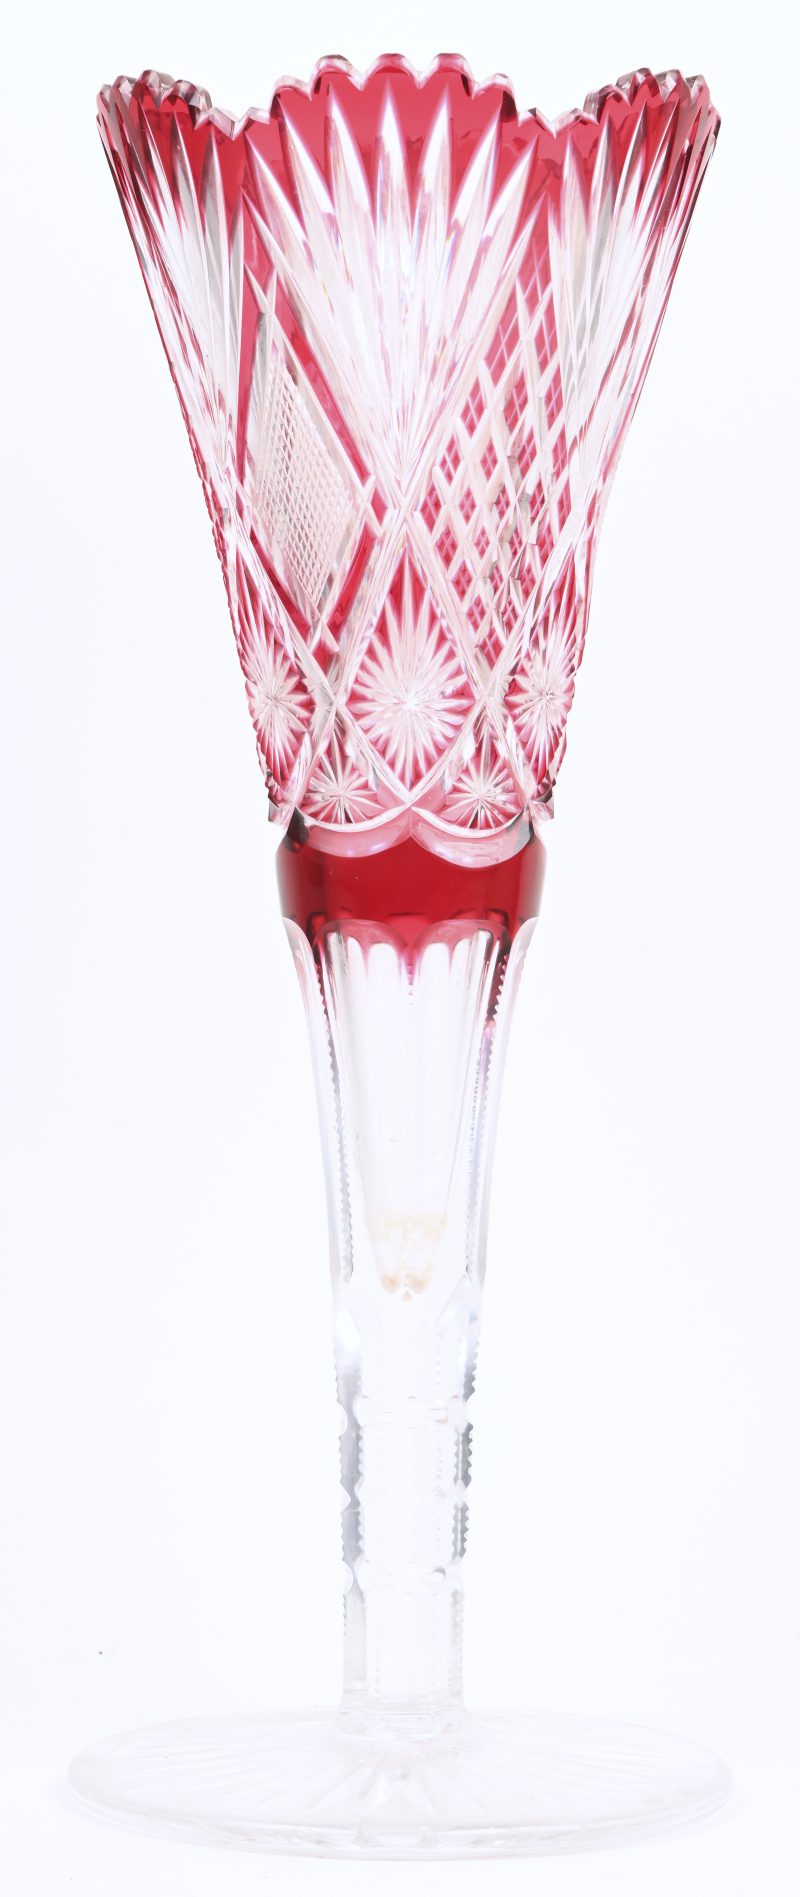 Een grote kristallen vaas op voet met minieme schade aan de rand, rood en doorzichtig.